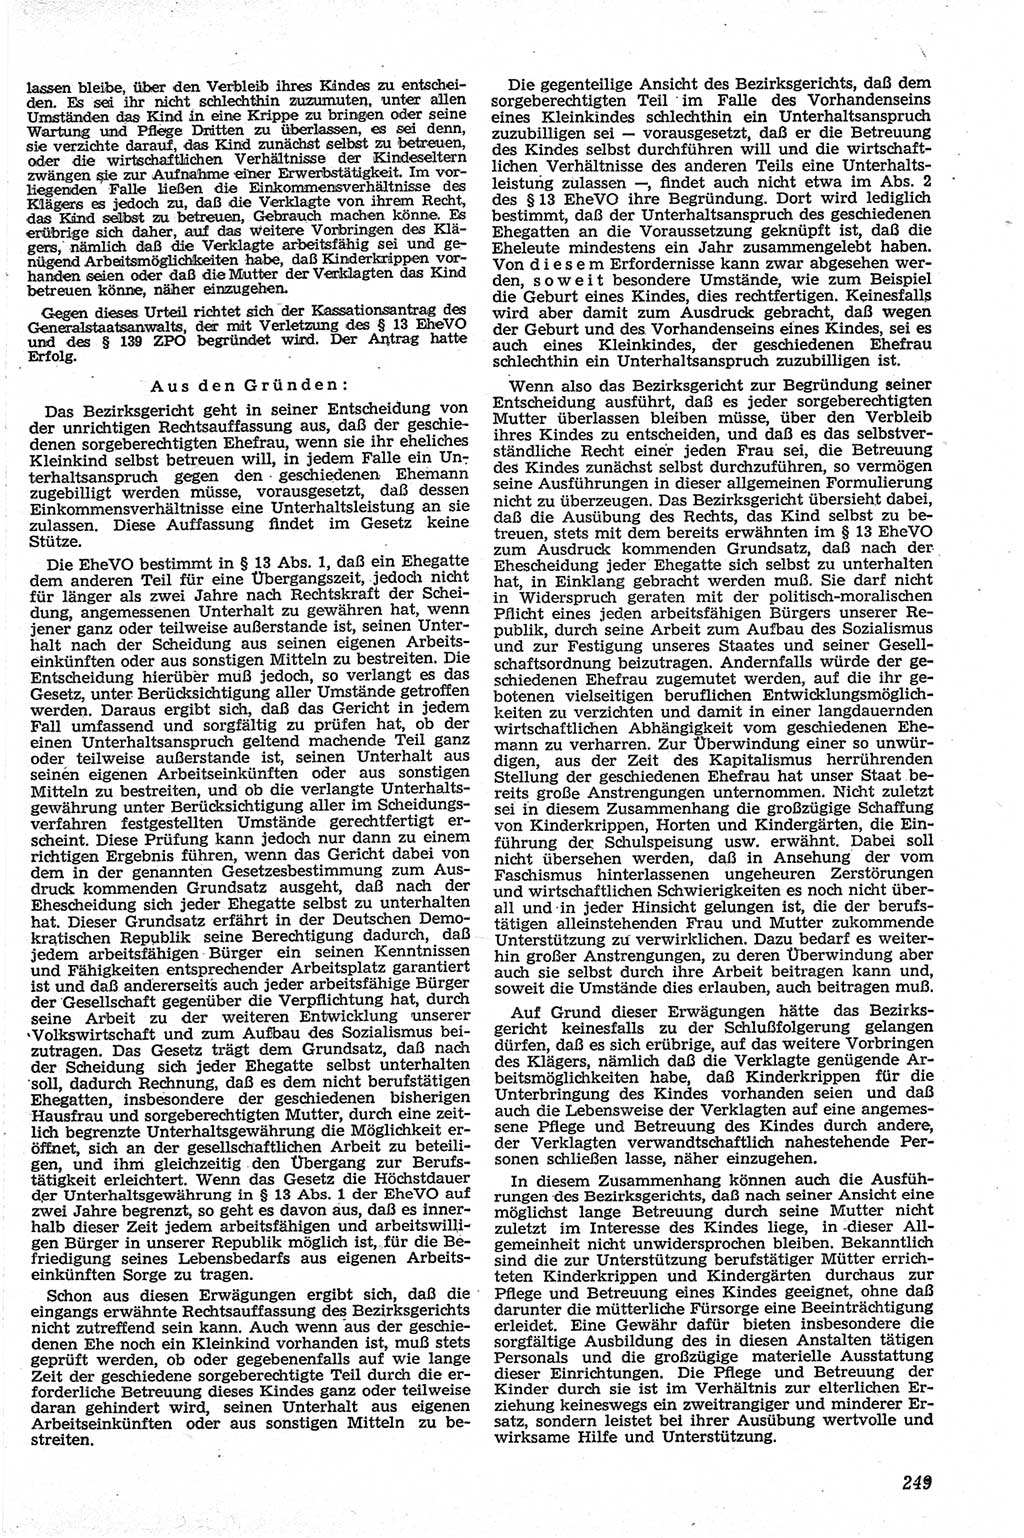 Neue Justiz (NJ), Zeitschrift für Recht und Rechtswissenschaft [Deutsche Demokratische Republik (DDR)], 13. Jahrgang 1959, Seite 249 (NJ DDR 1959, S. 249)